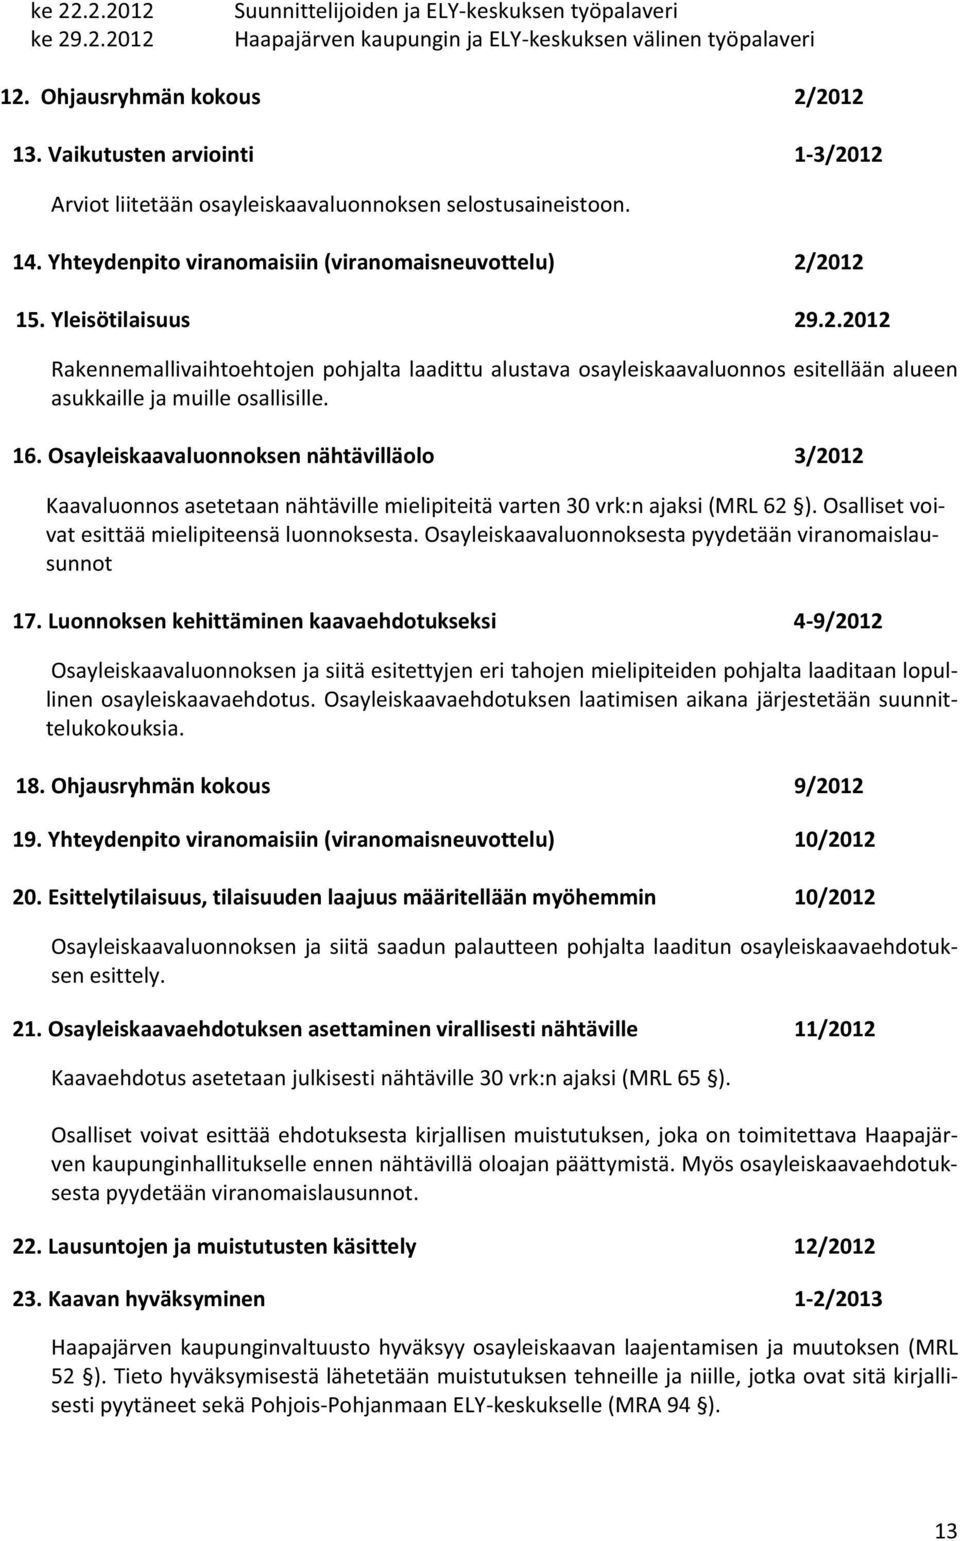 16.Osayleiskaavalunnksennähtävilläl 3/2012 Kaavalunnsasetetaannähtävillemielipiteitävarten30vrk:najaksi(MRL62 ).Osallisetvi vatesittäämielipiteensälunnksesta.